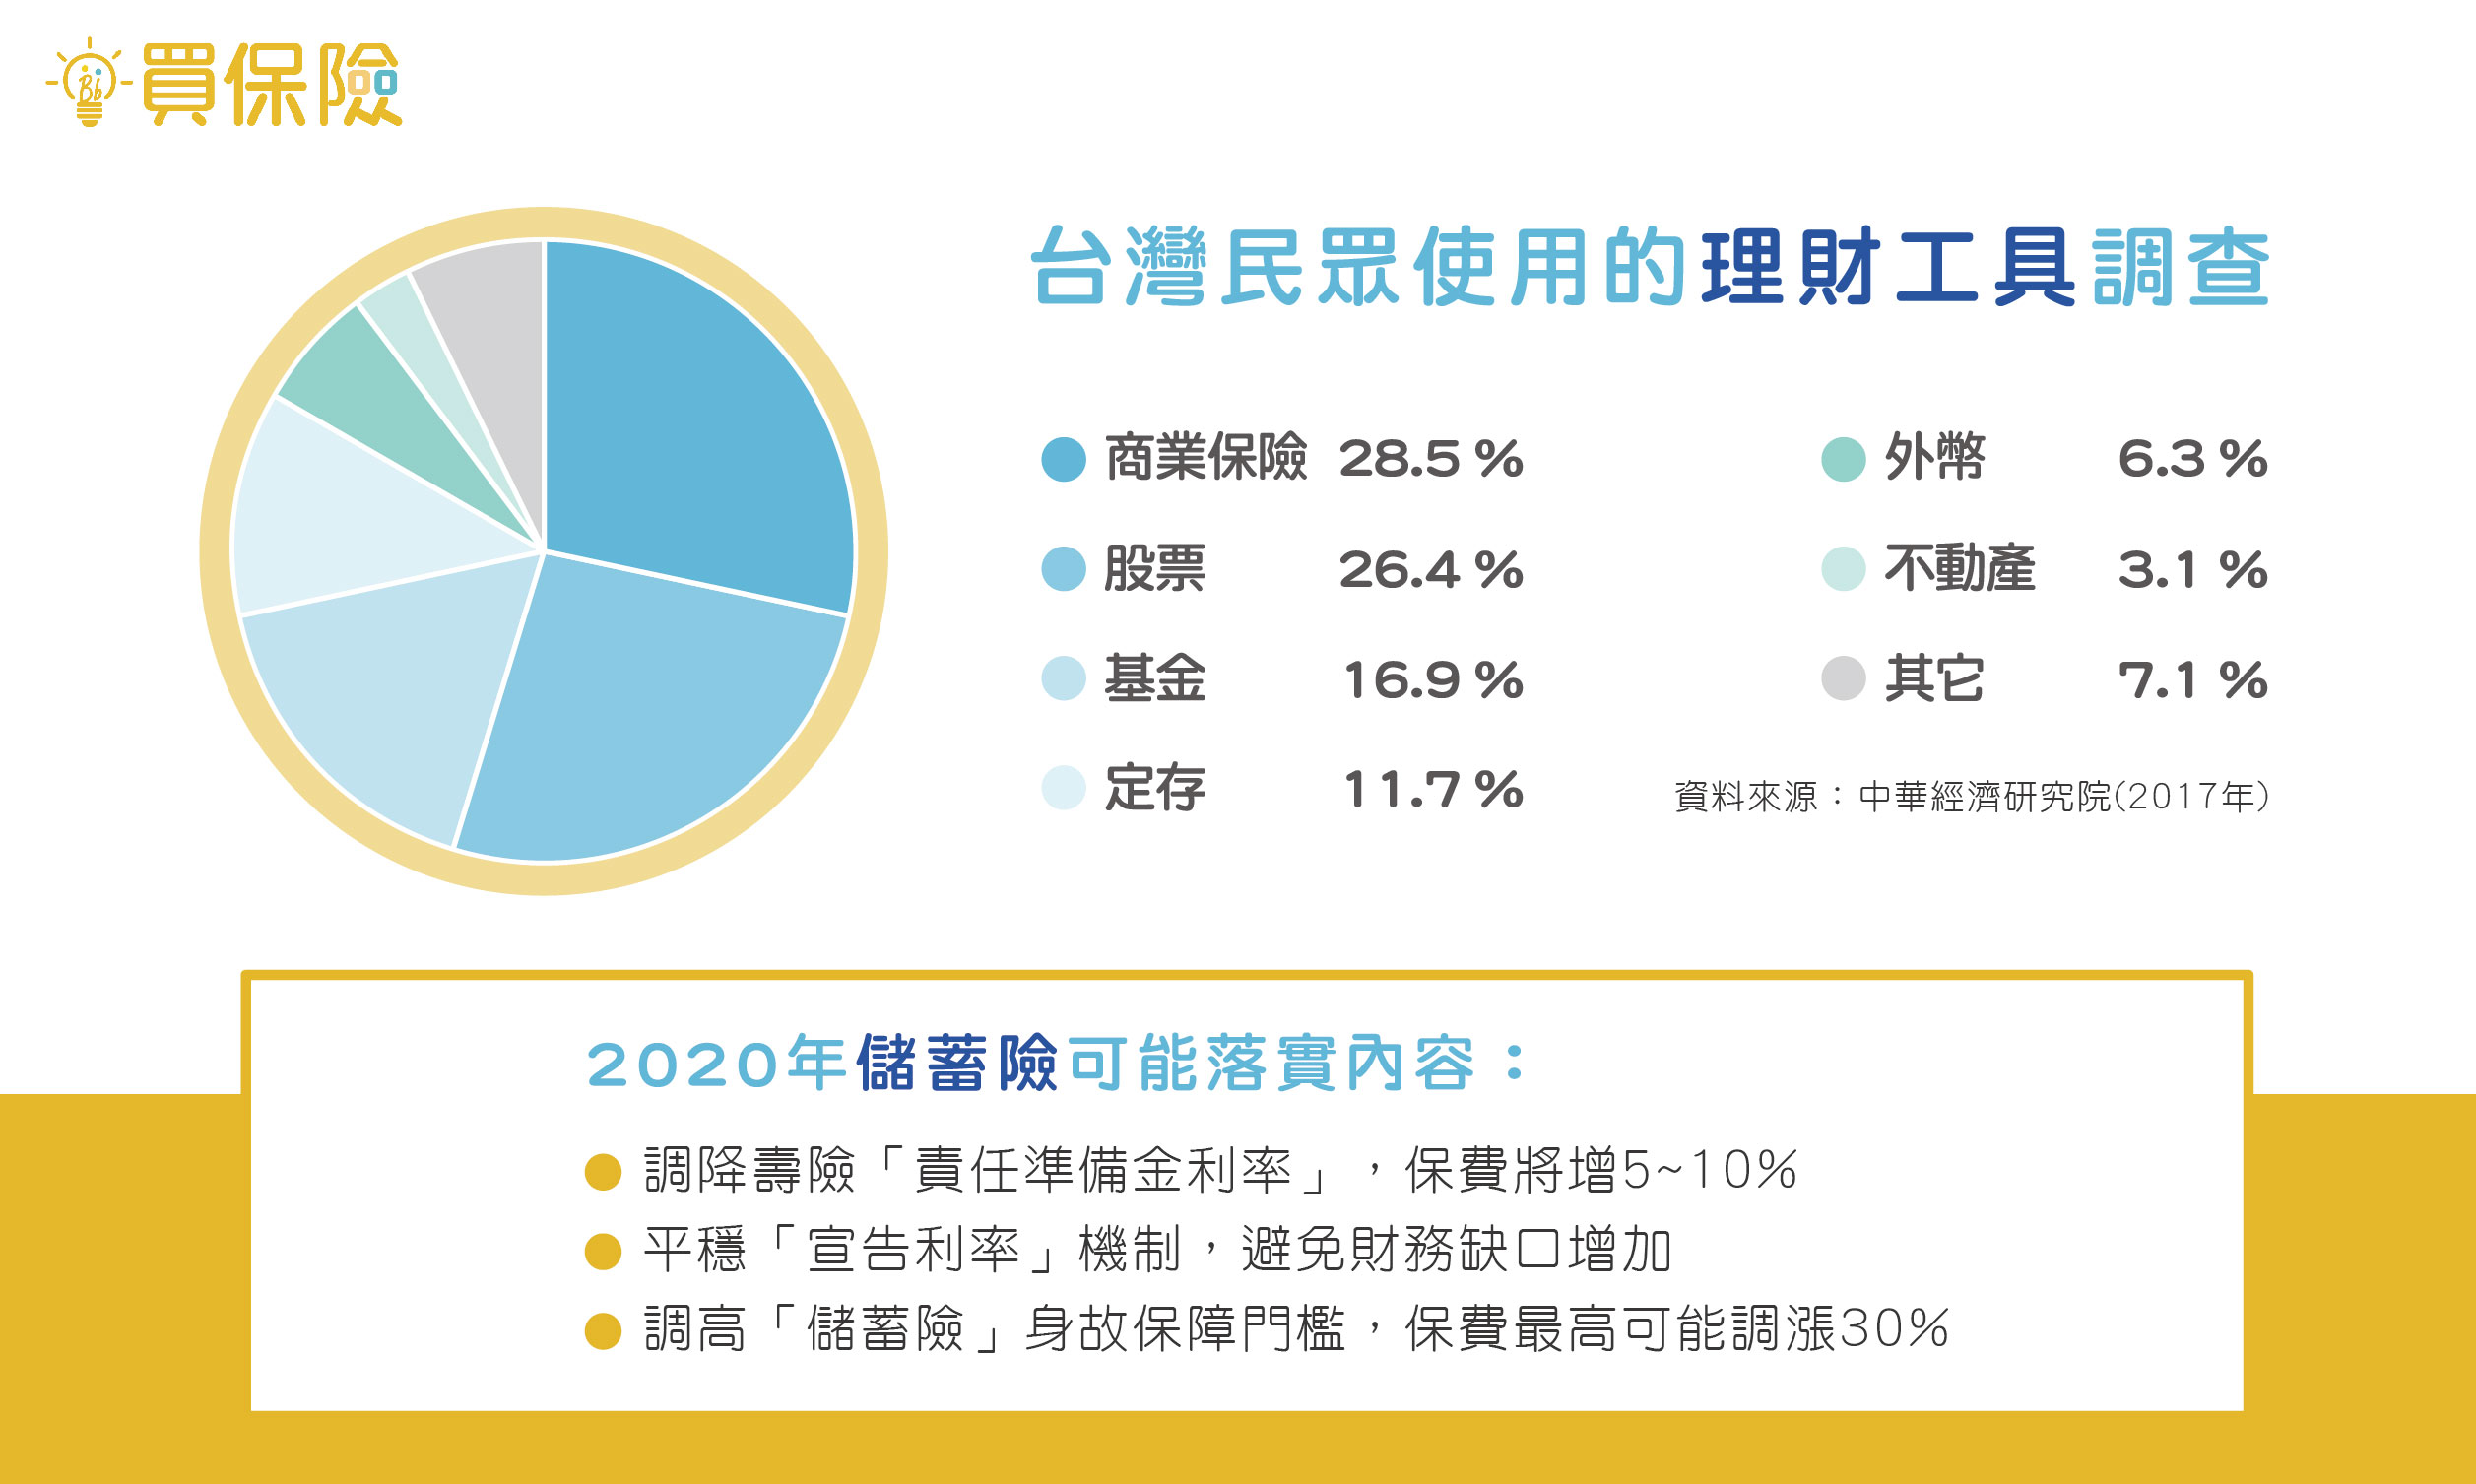 2017年台灣民眾使用的理財工具調查及2020年儲蓄險落實的三點內容